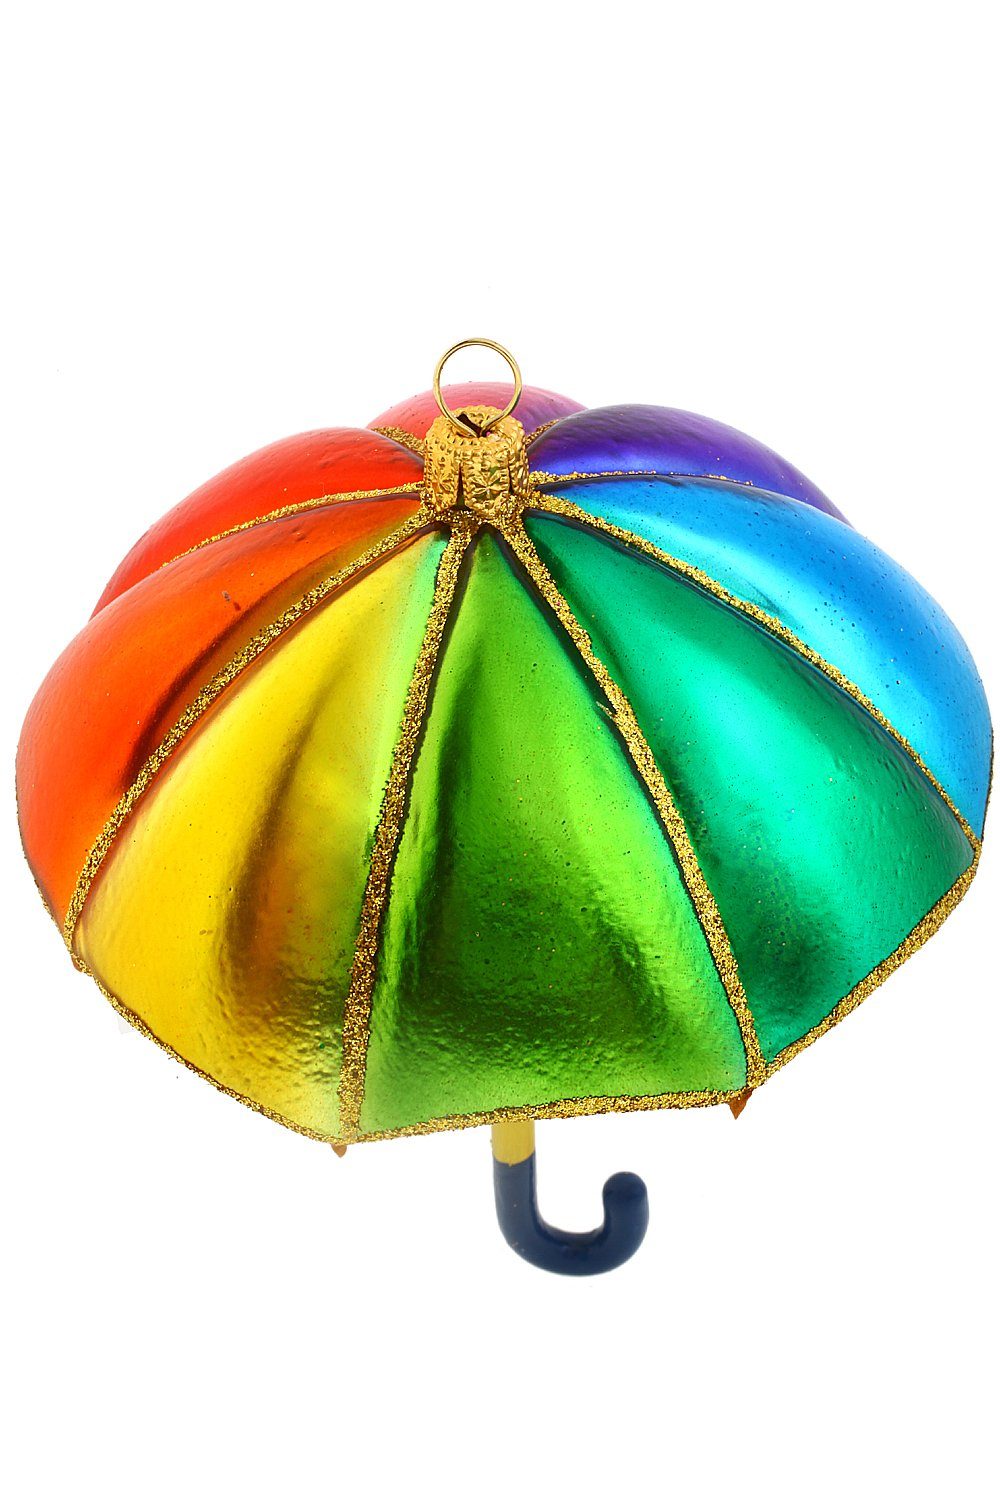 - mundgeblasen Regenschirm - Regenbogenfarben, Hamburger Weihnachtskontor Christbaumschmuck handdekoriert Dekohänger